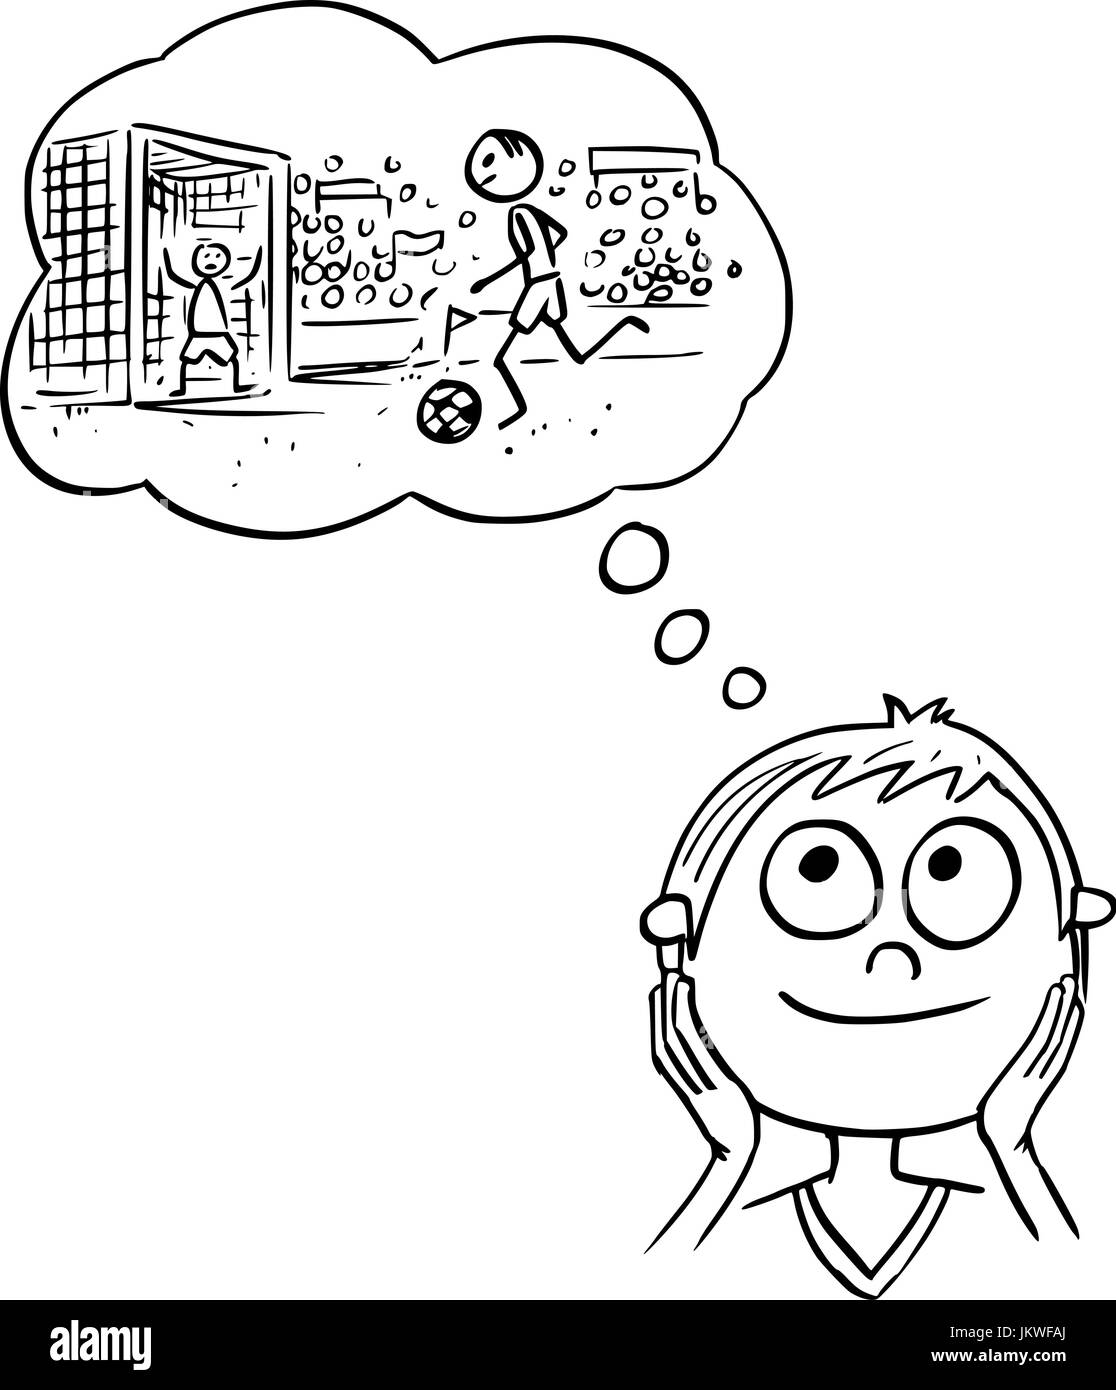 Disegno a mano cartoon illustrazione vettoriale di boy dreaming about football soccer la carriera di giocatore. Illustrazione Vettoriale